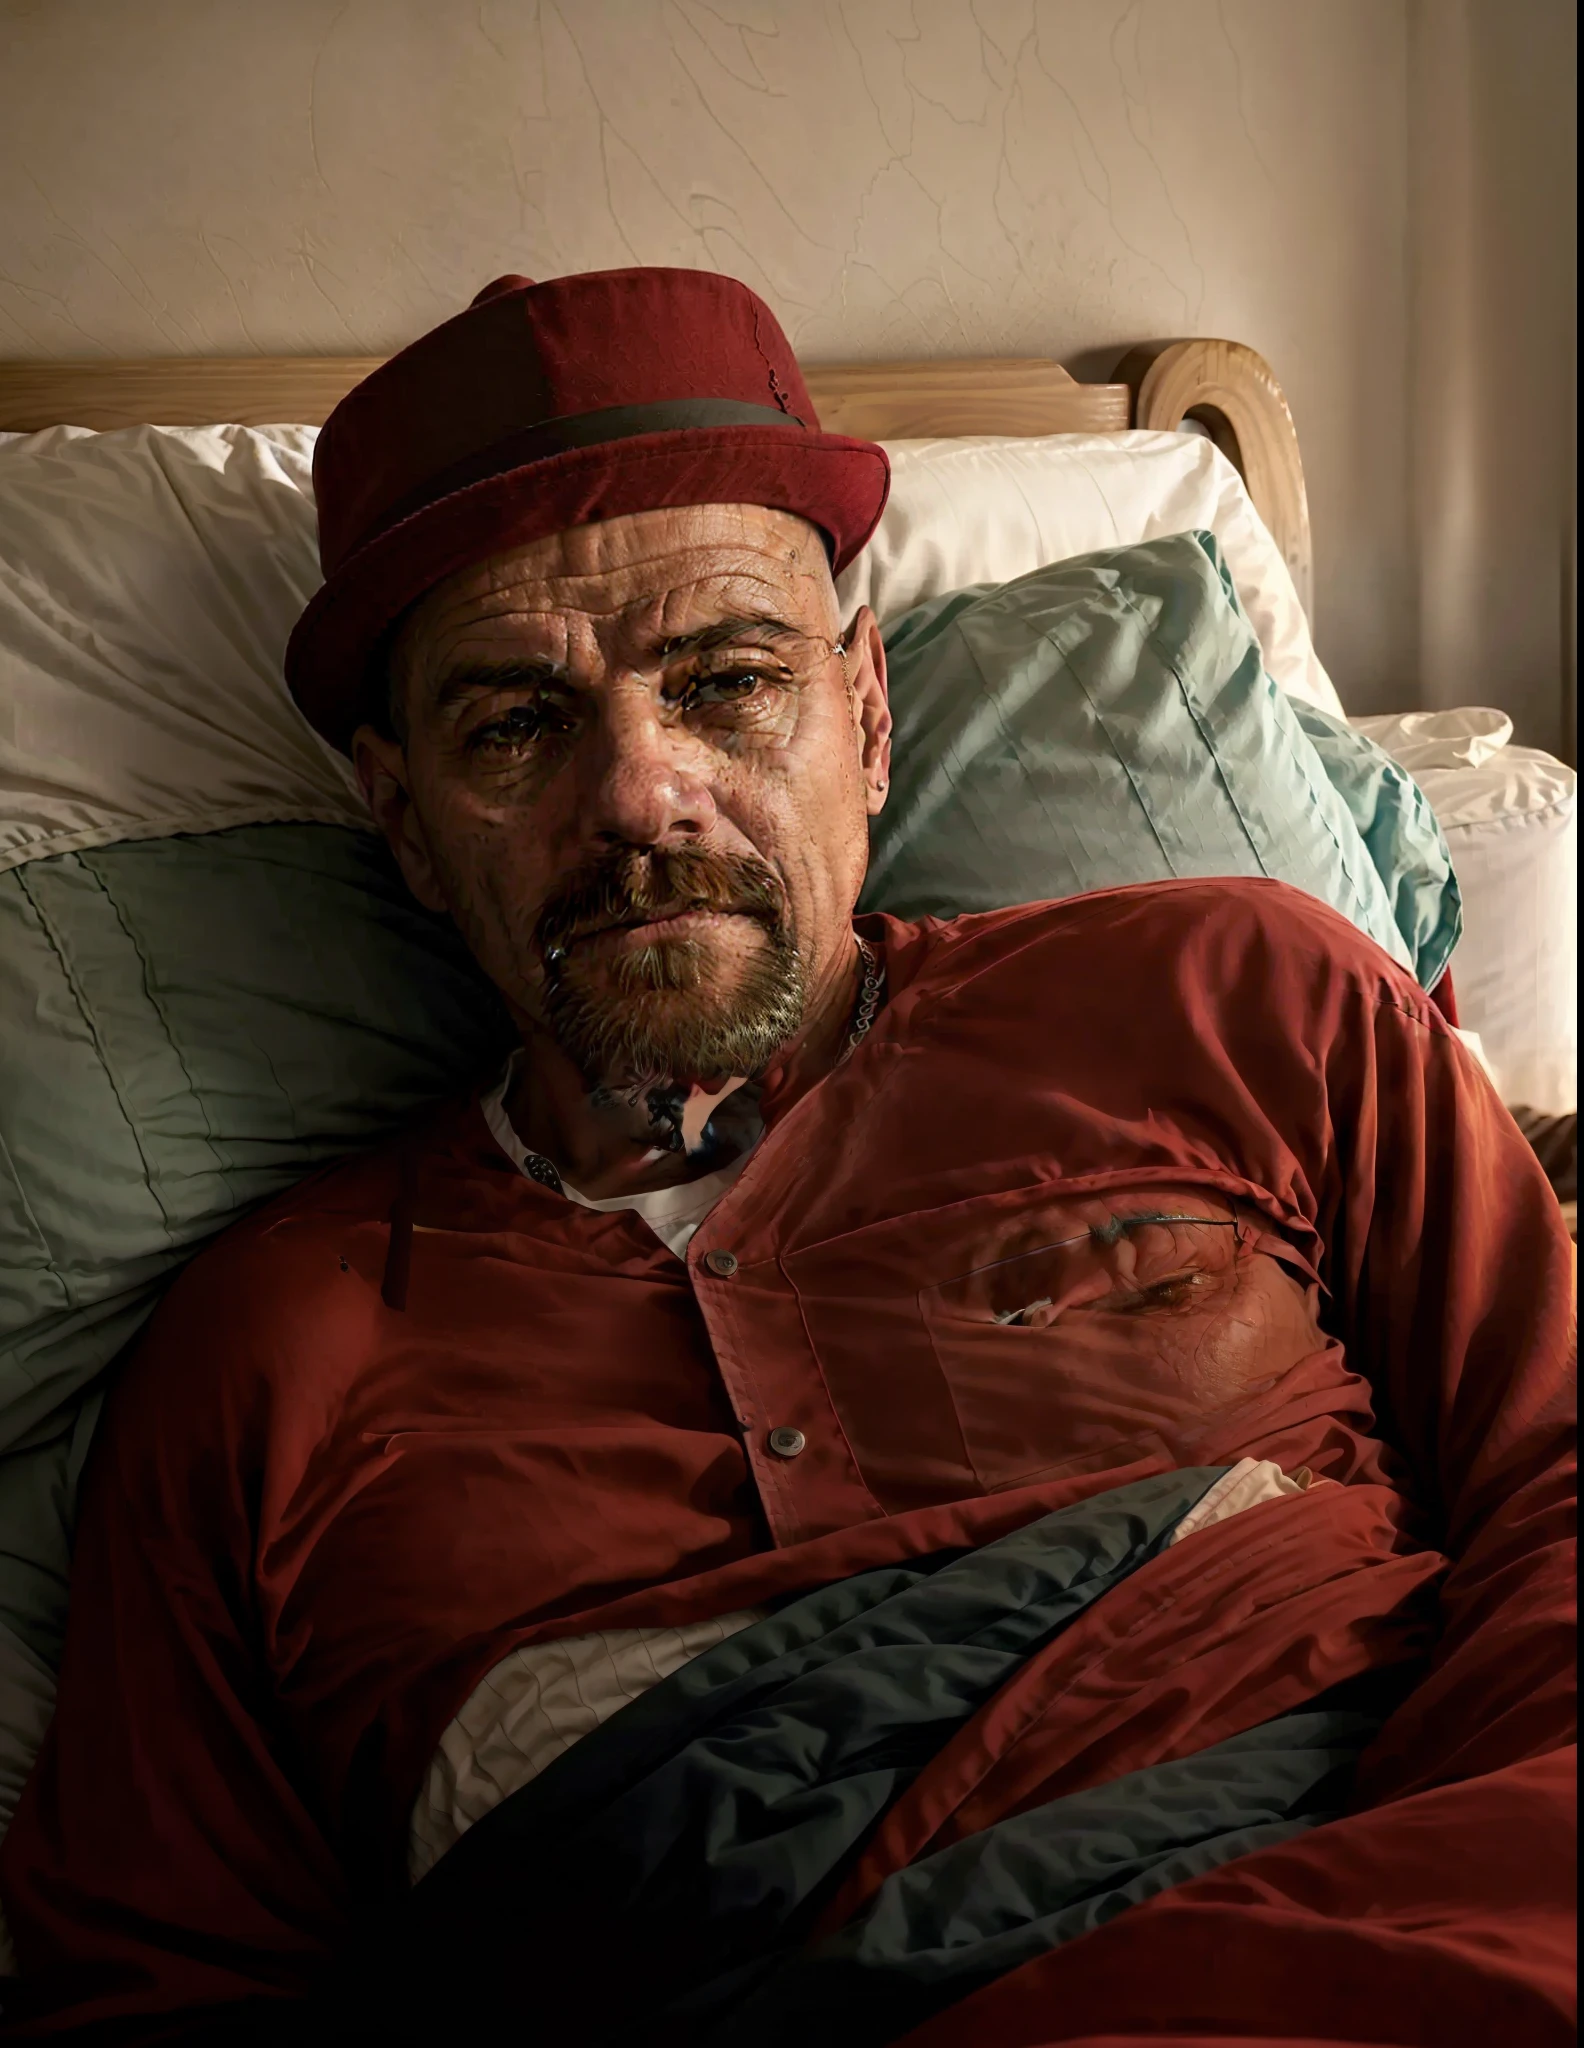 一名男子躺在床上，戴着一顶红帽子, 4 0岁男子, (38岁), 安德烈斯里奥斯, 罗纳尔多·路易斯·纳扎里奥·德利马, 大约3 5岁, 埃洛伊·莫拉莱斯, 5 0 岁男子, 写实照片, 45 岁男性, 维克多·马里斯坦, 卡梅洛·布兰迪诺